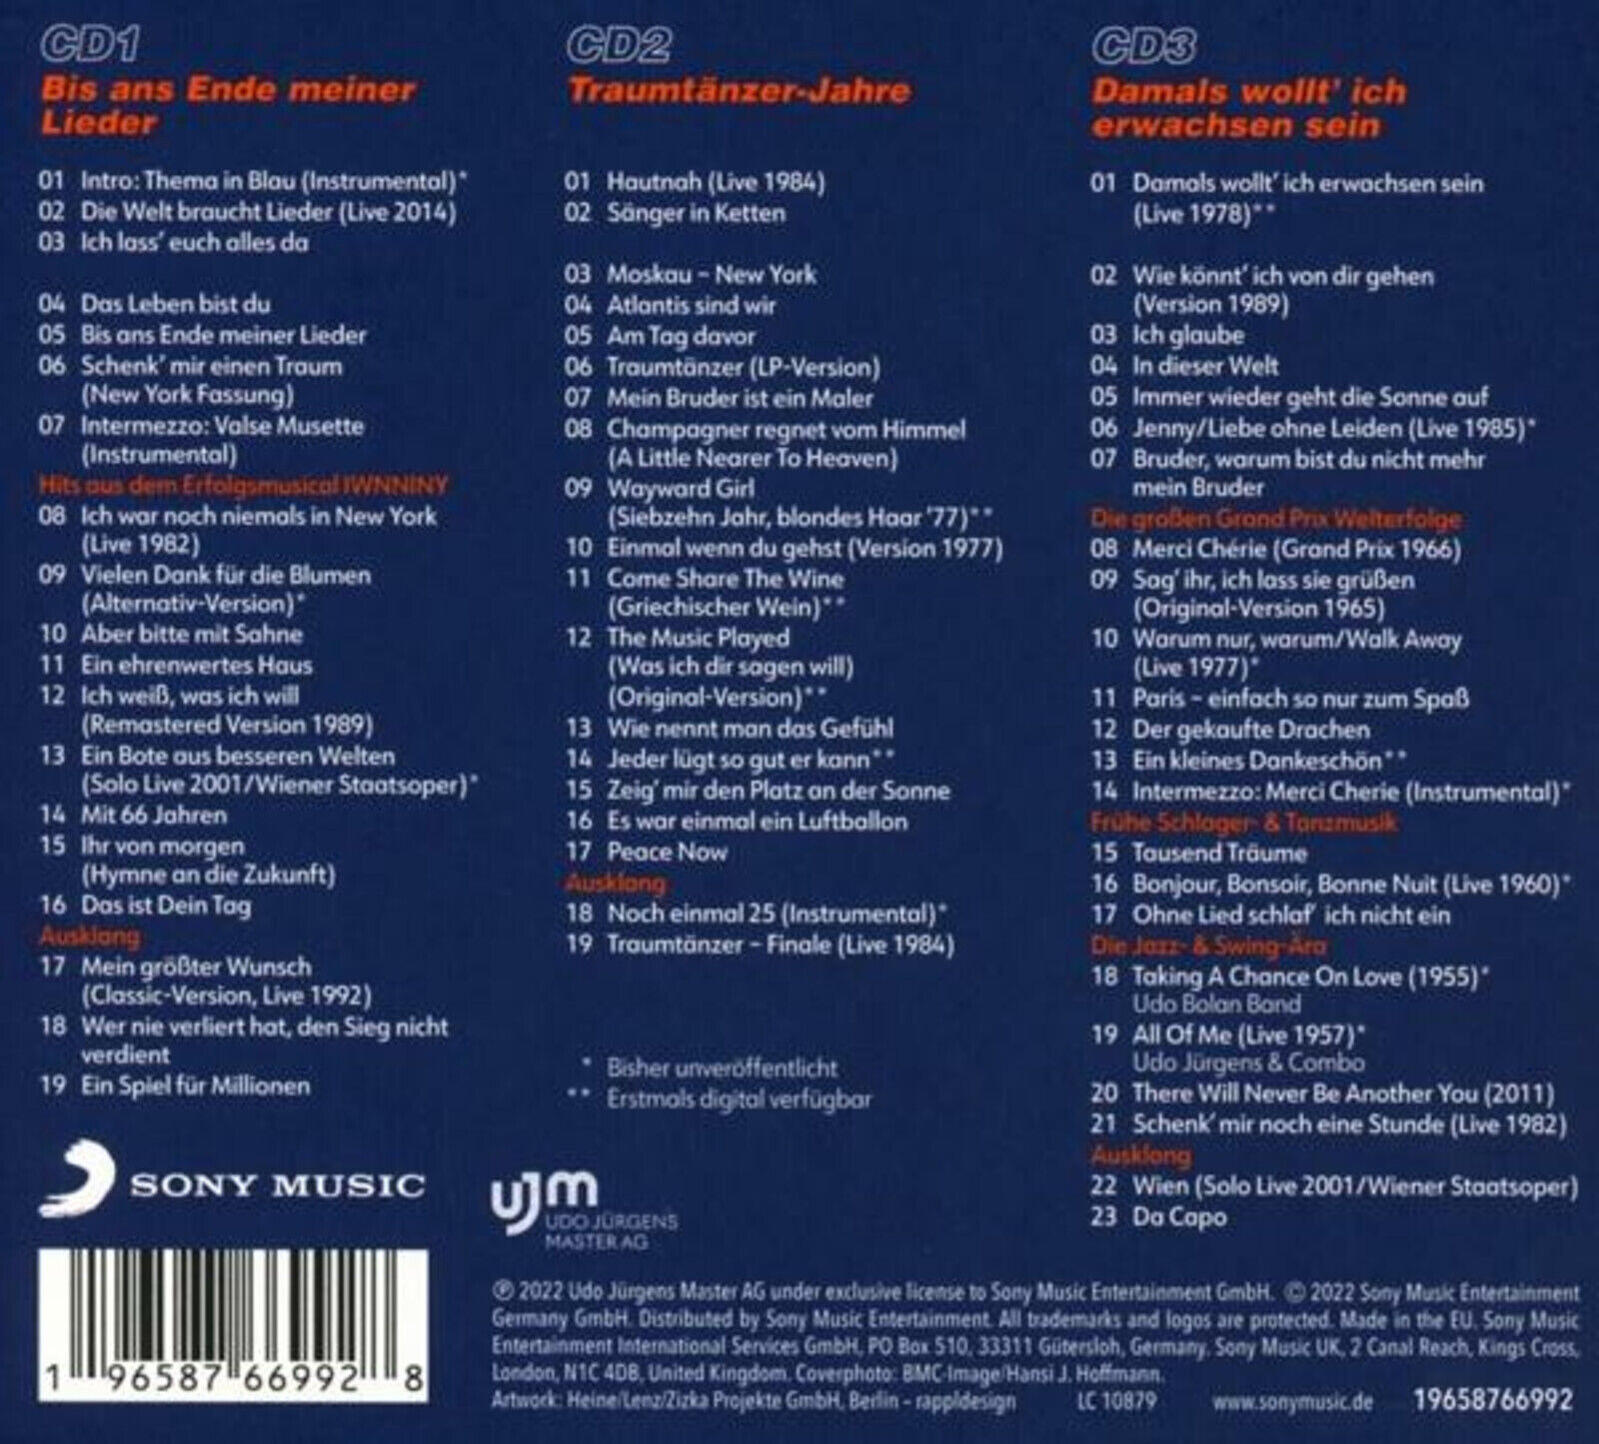 Udo Jürgens Einer Da Weltkarriere - (CD) - Capo - Stationen